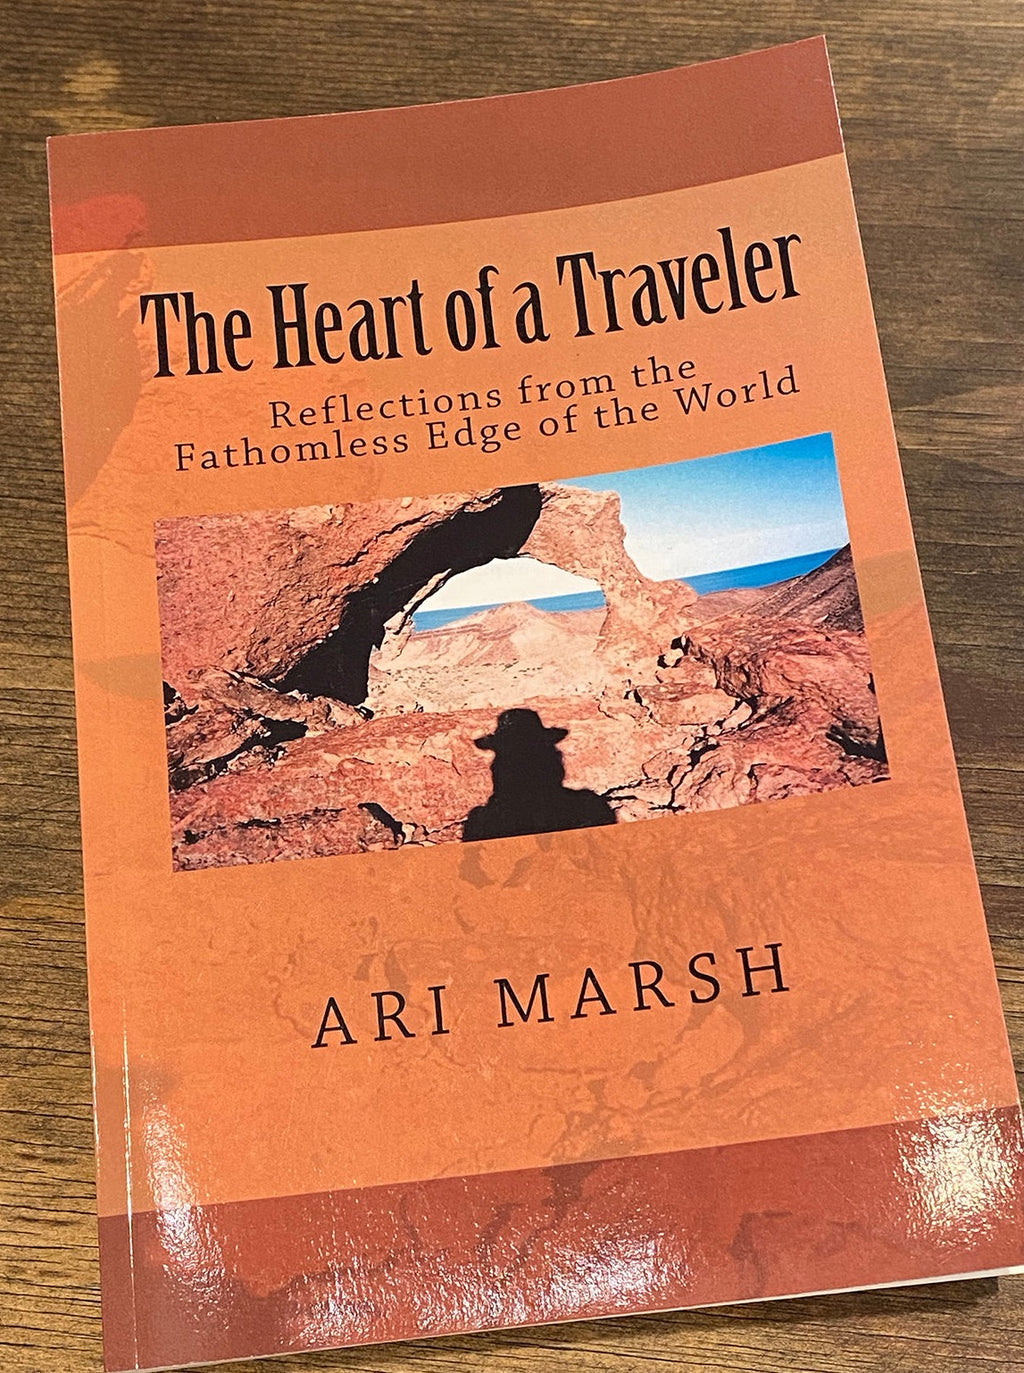 Book "The Heart of the Traveler" Ari Marsh